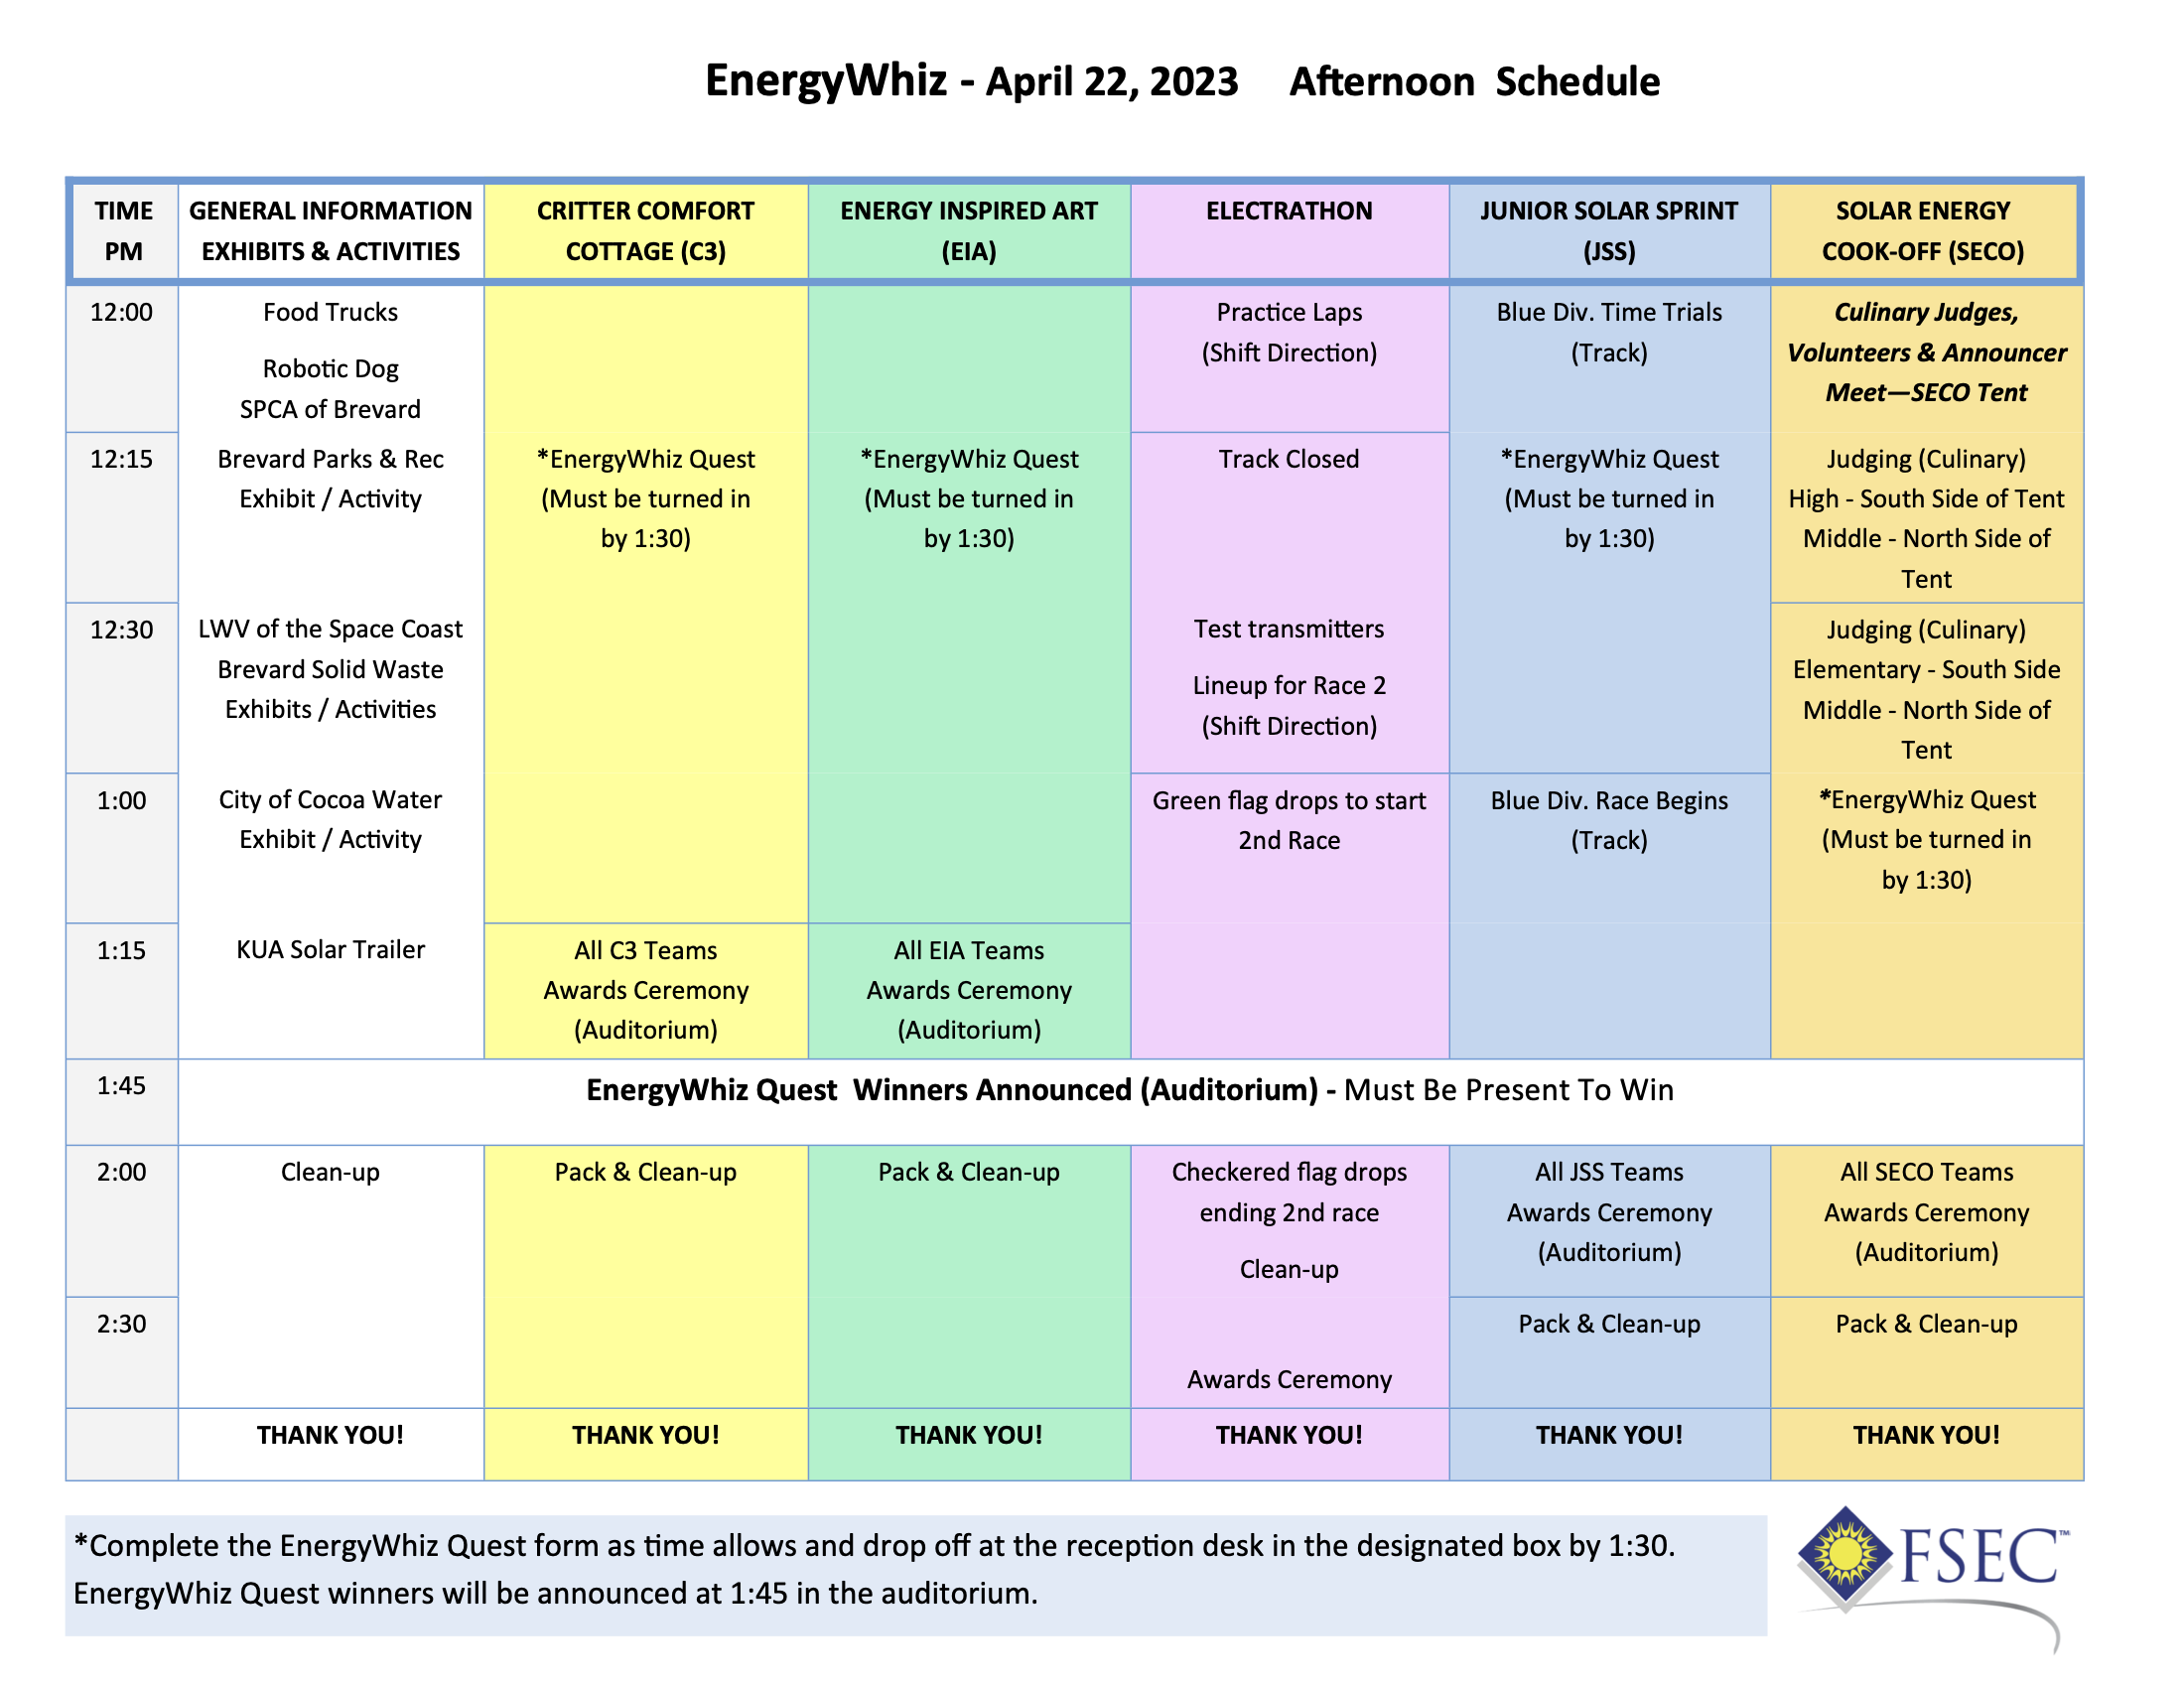 EnergyWhiz schedule